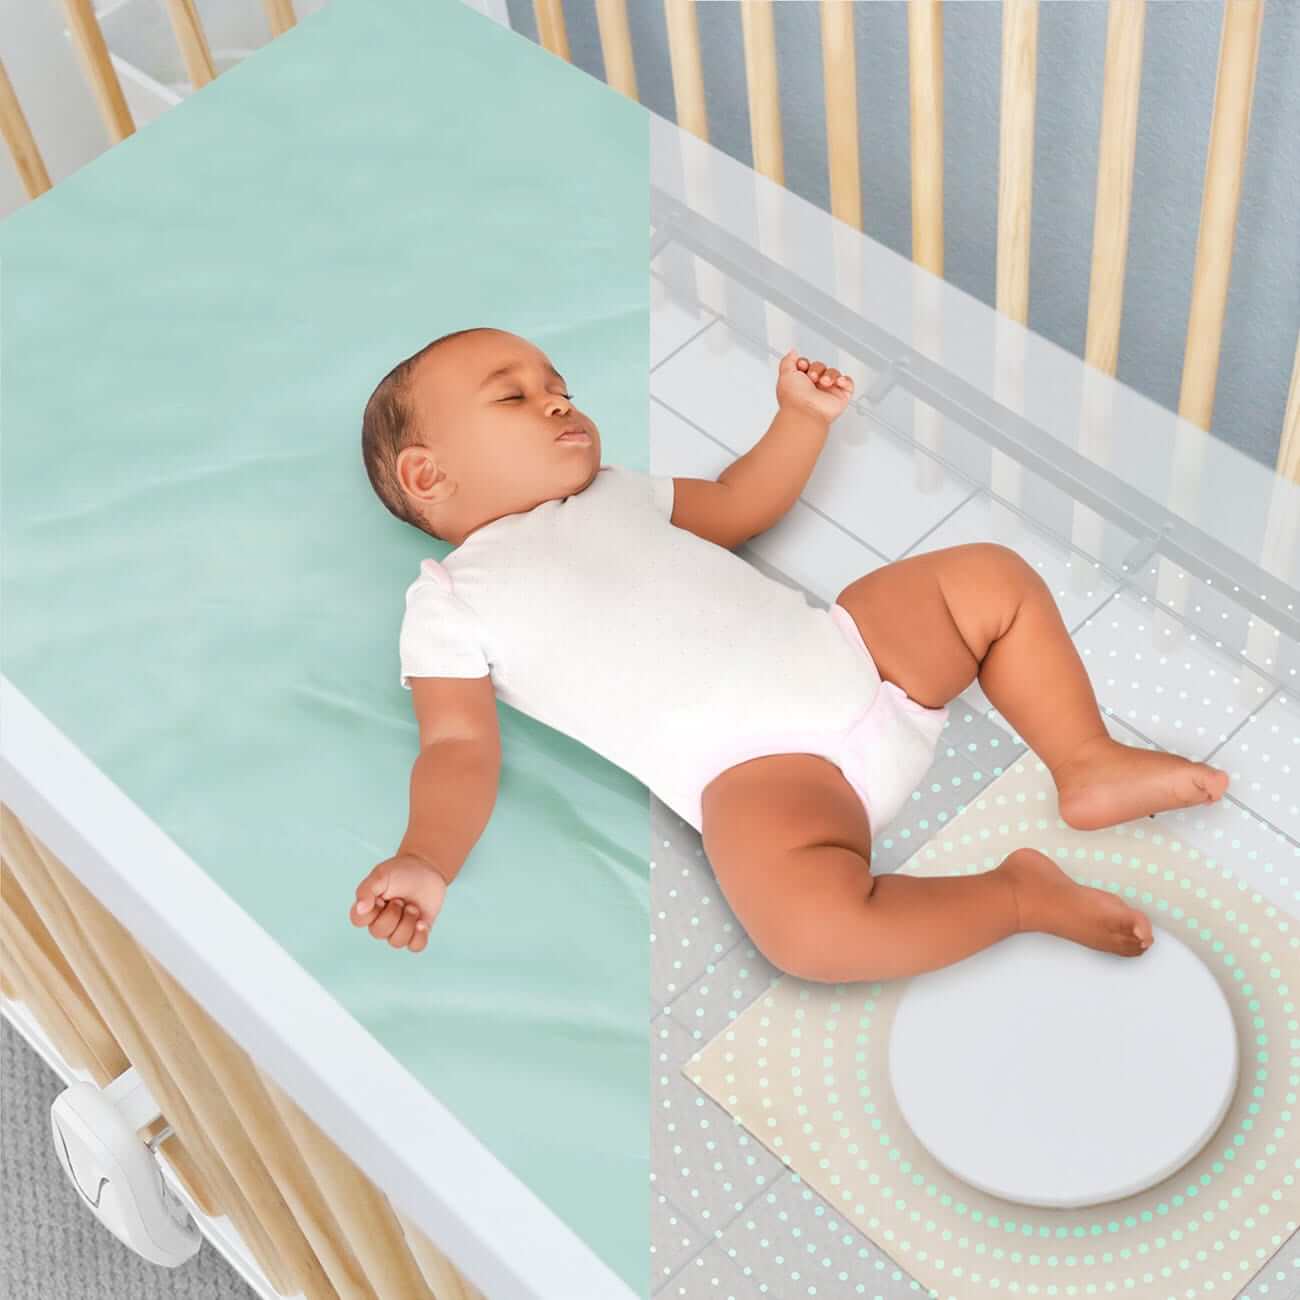 赤ちゃんを守る新生児・乳児用体動センサ | ベビーセンスホーム